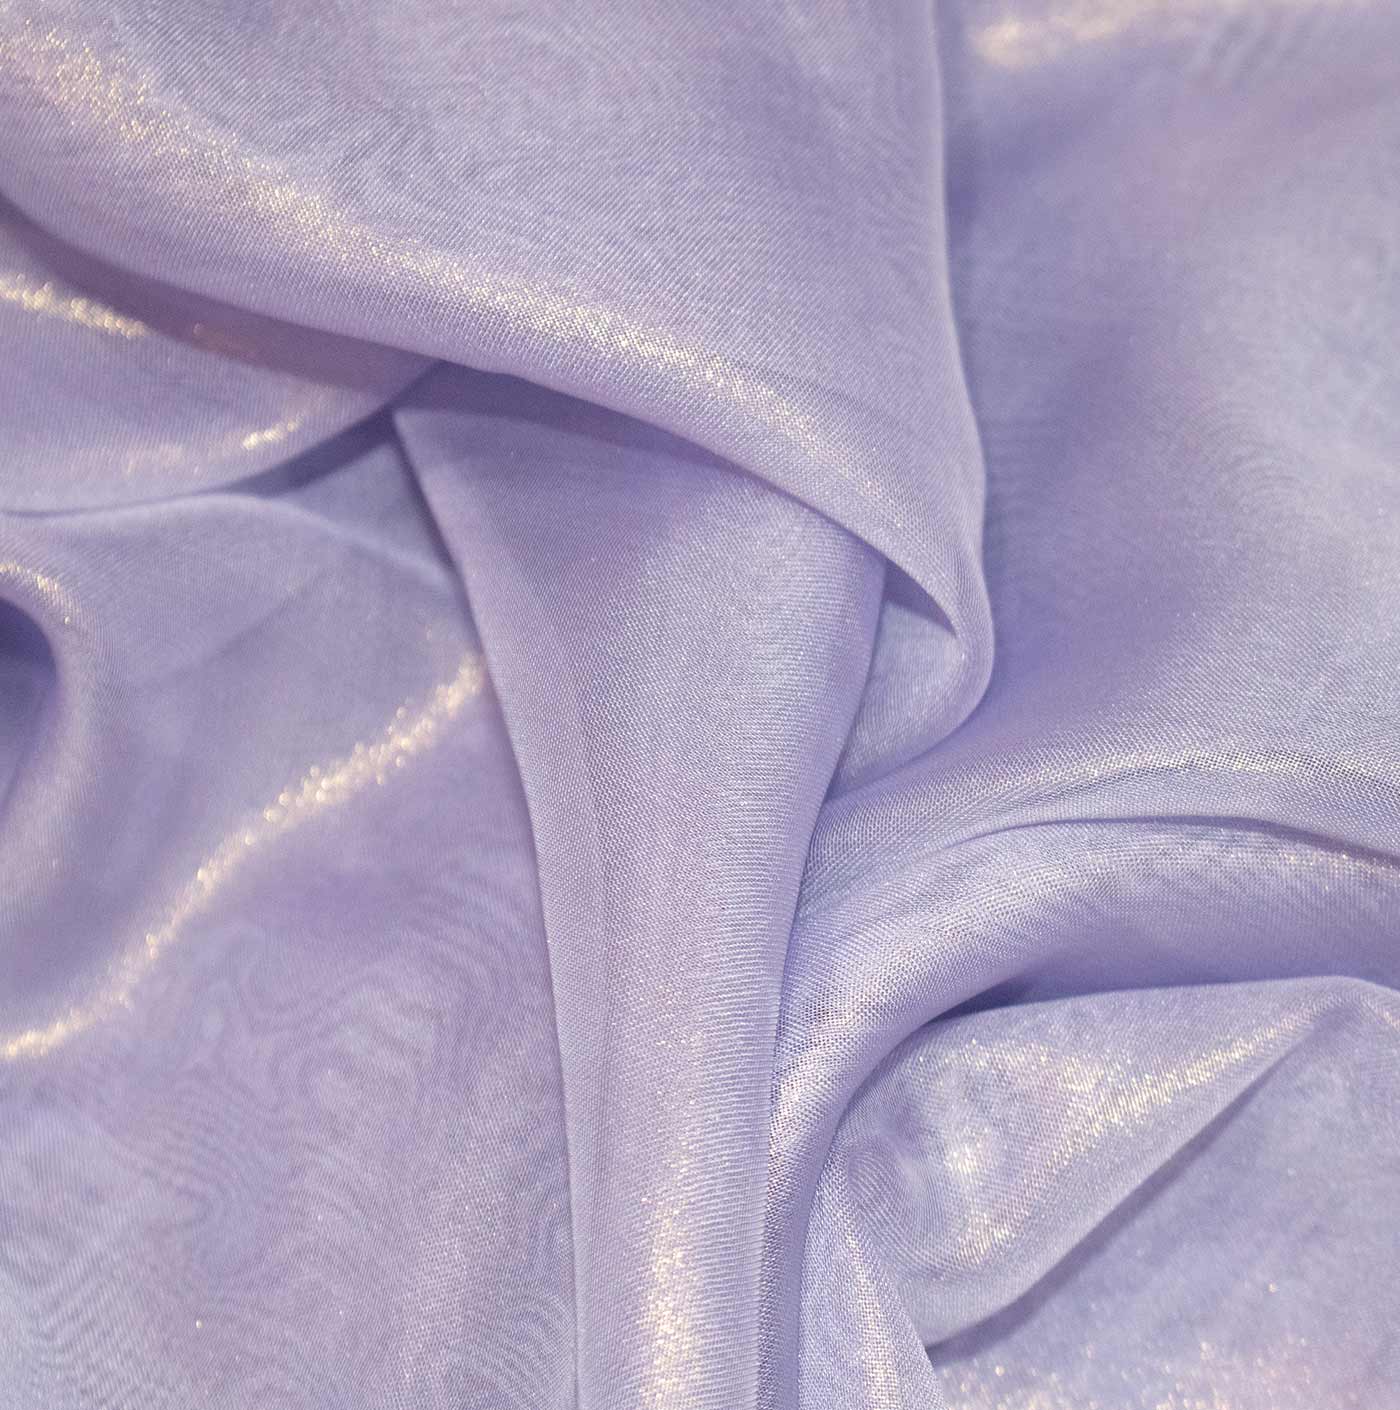 Lilac Cationic Chiffon Fabric